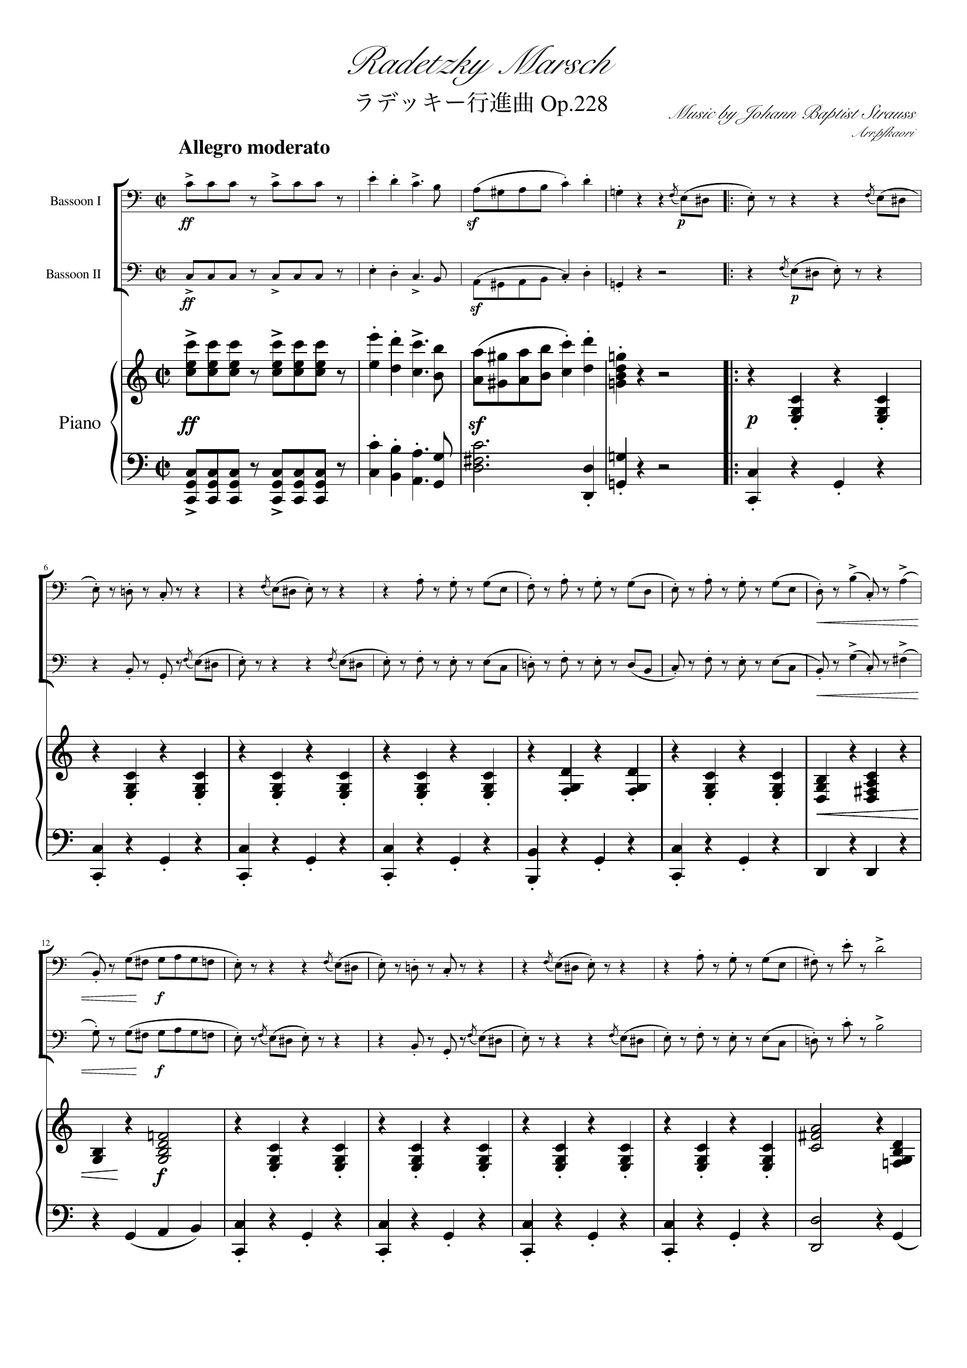 ヨハンシュトラウス1世 - ラデッキー行進曲 (C・ピアノトリオ/ファゴットデュオ) by pfkaori